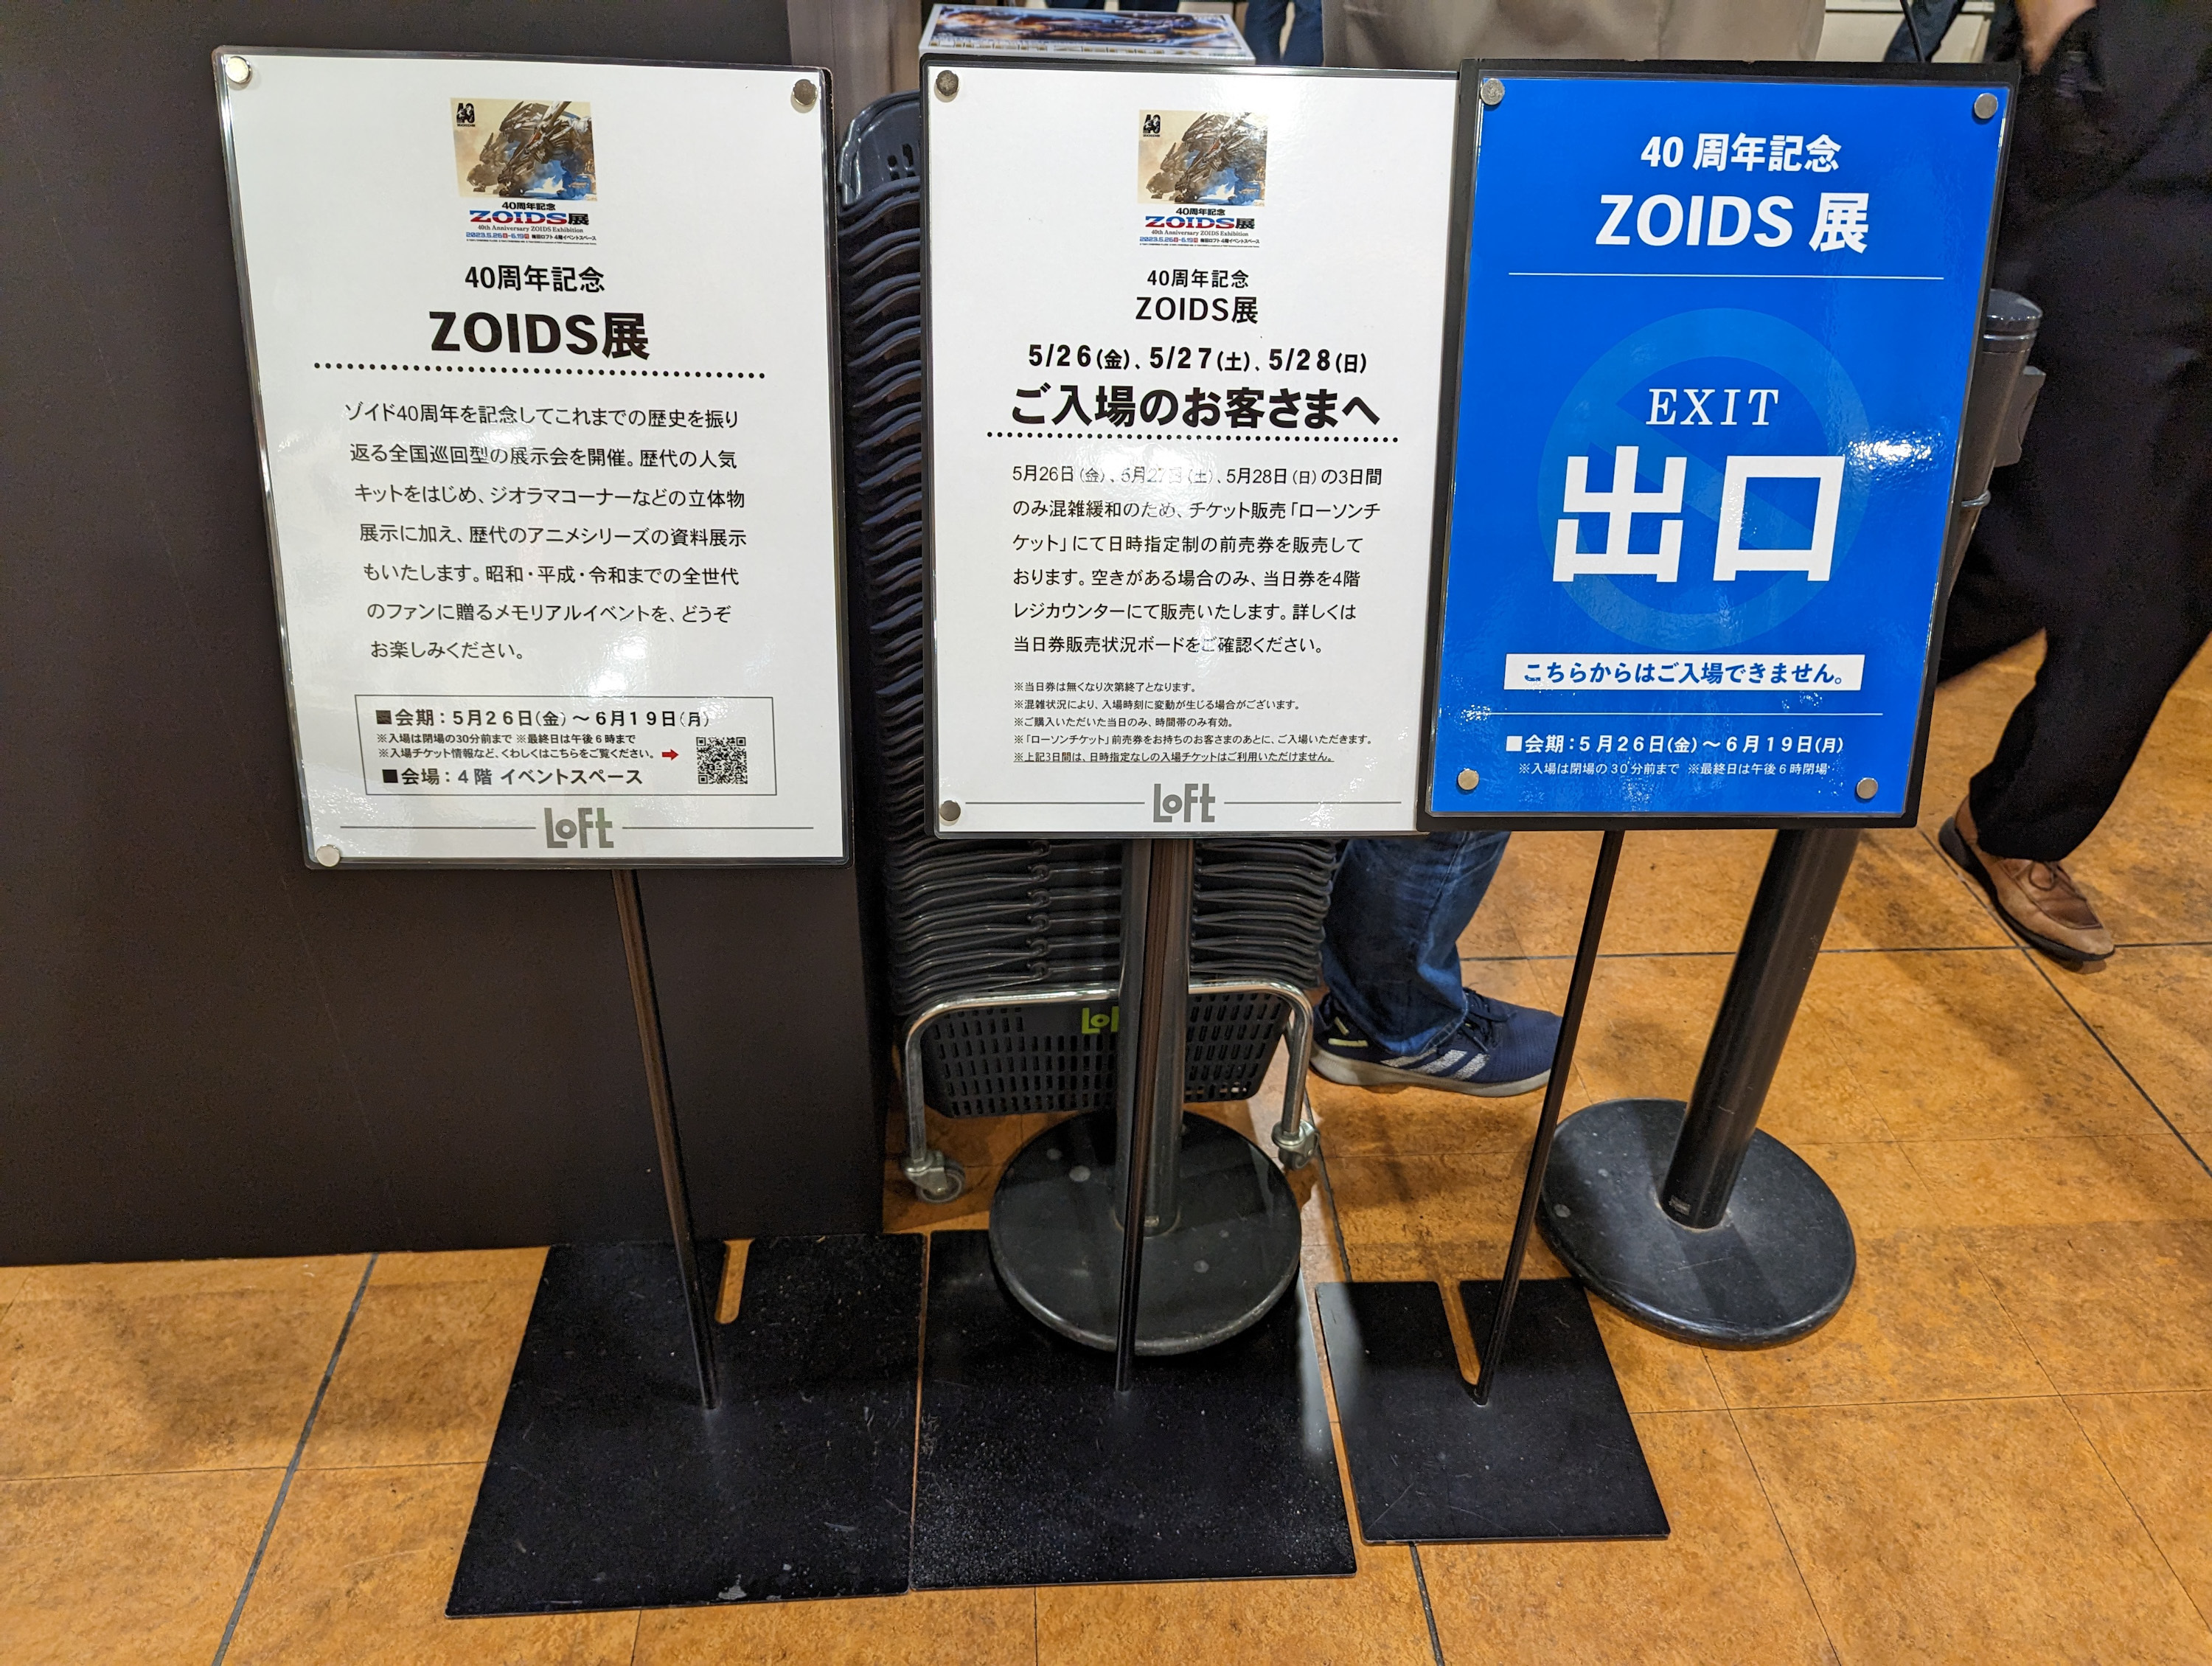 雑記 40周年記念ZOIDS展(大阪会場)へ行ってきました - ふじの生態日記